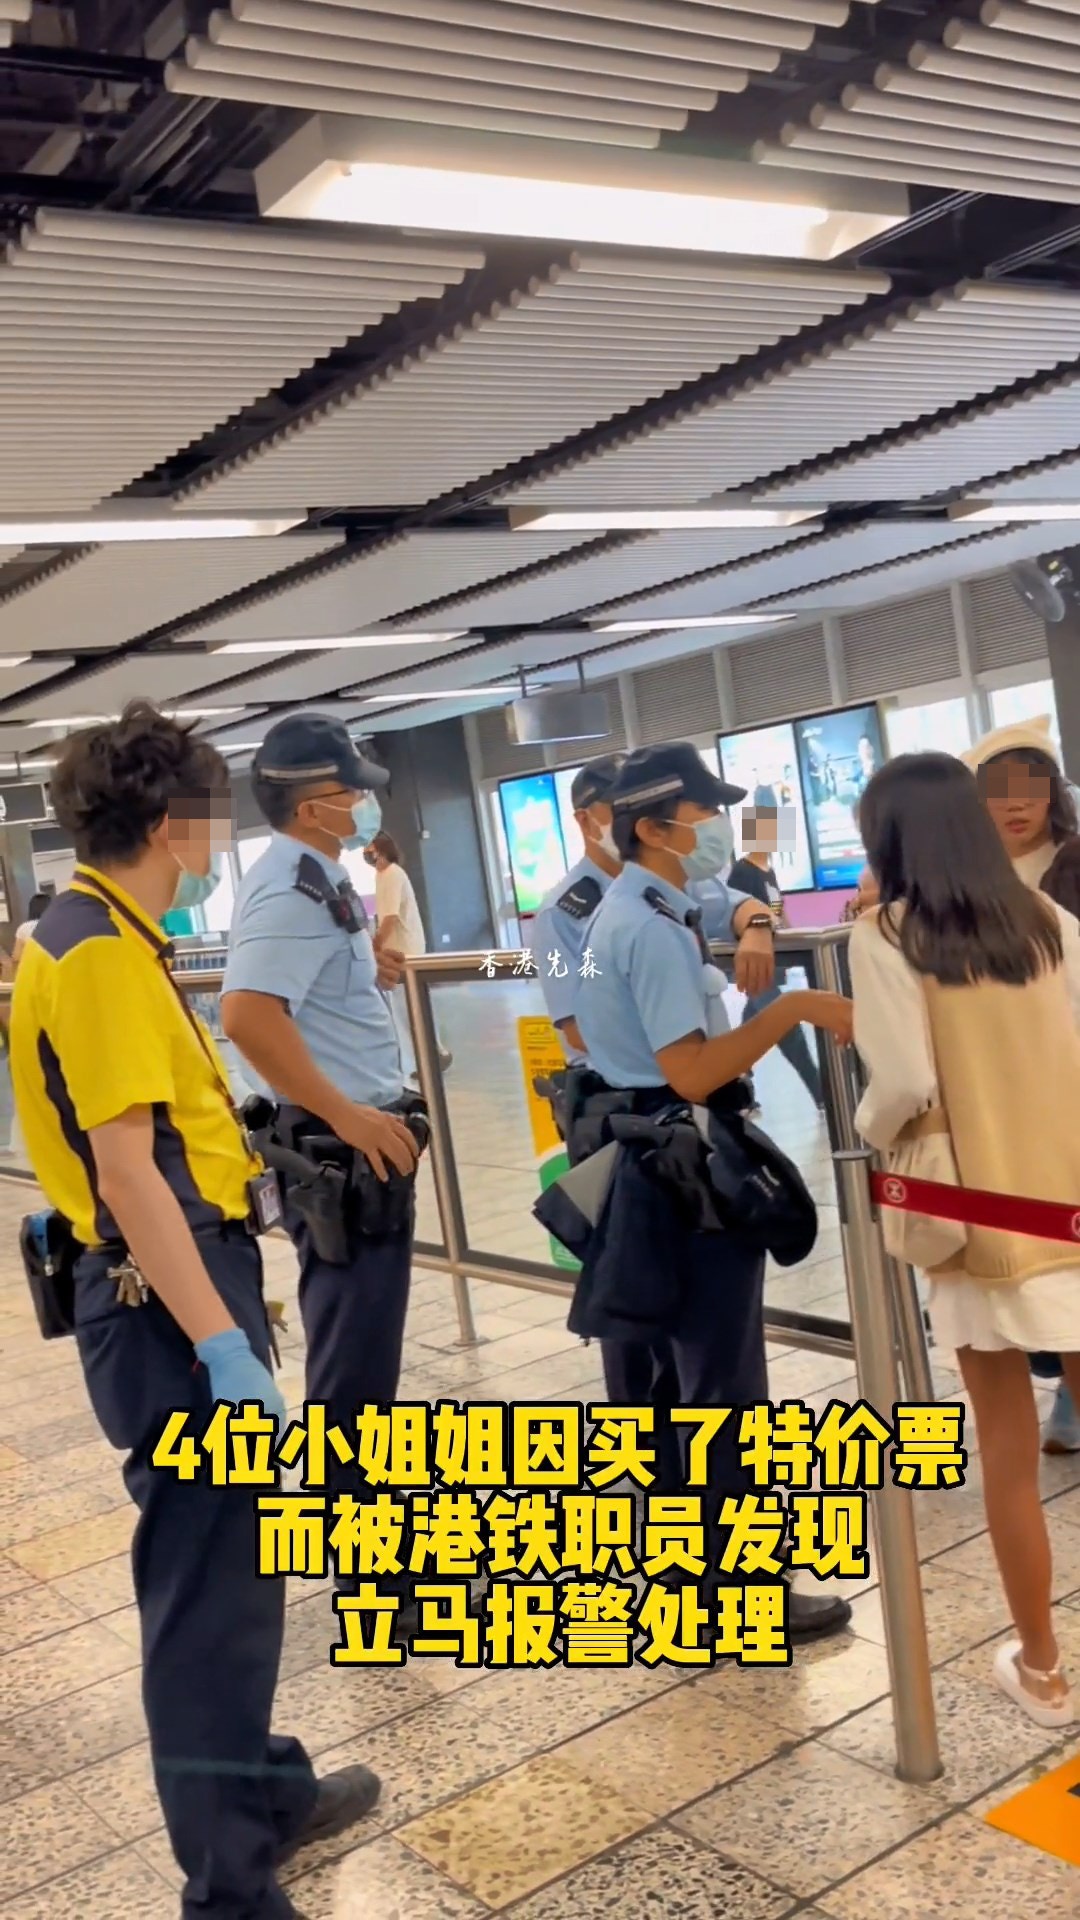 从影片见到，4名年轻女子正在港铁车站内，旁边有3名警察处理，另有一名男港铁职员在场，路过的人都好奇张望。（影片截图）